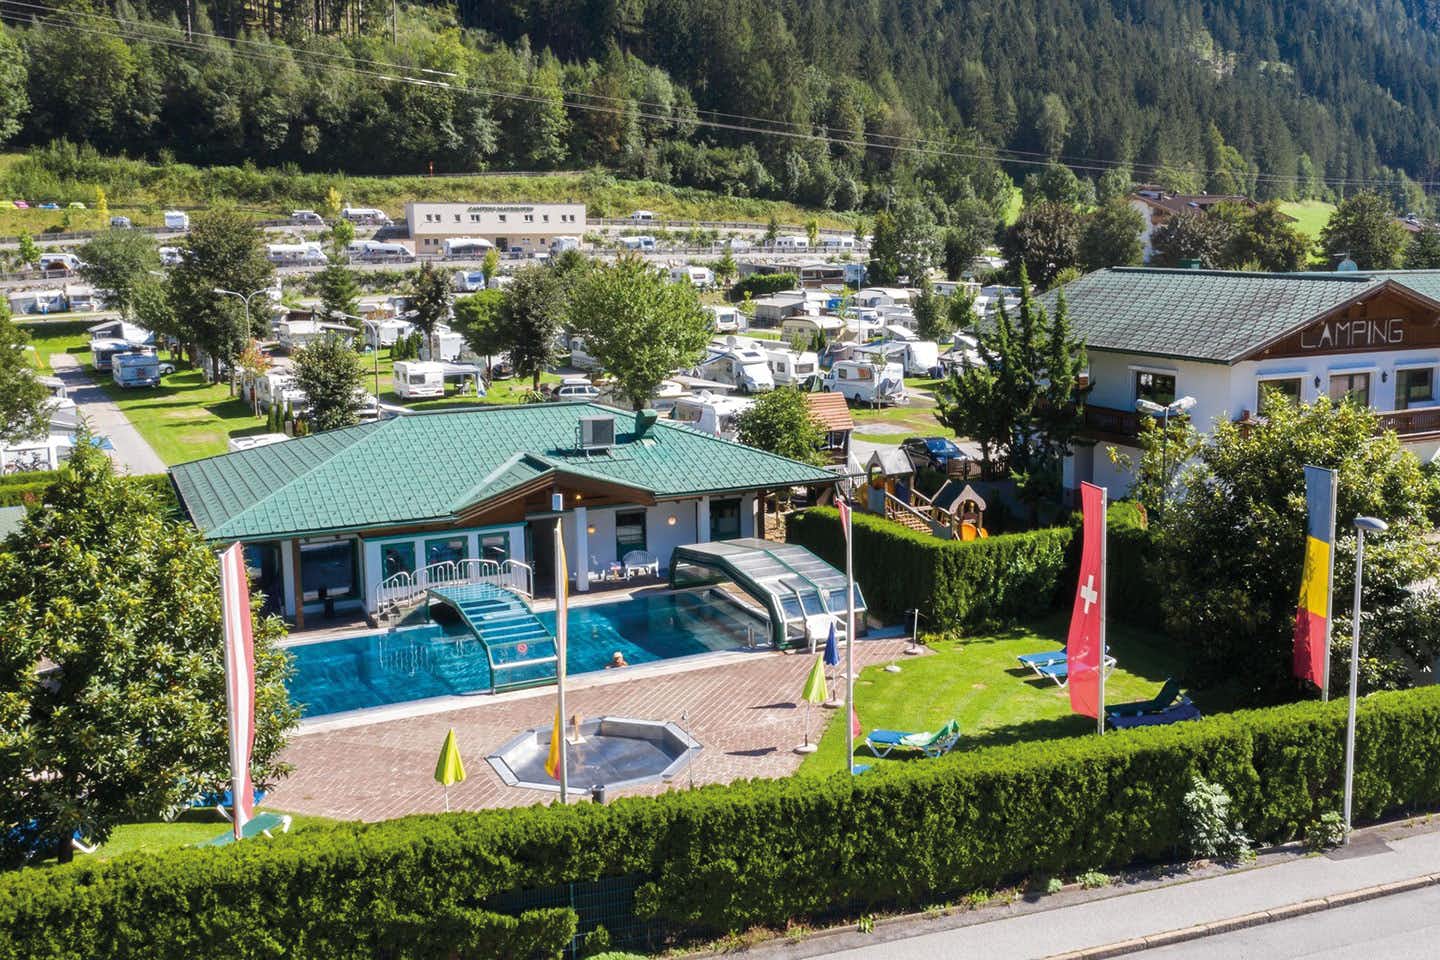 Camping Mayrhofen - Blick auf den Pool auf dem Campingplatz